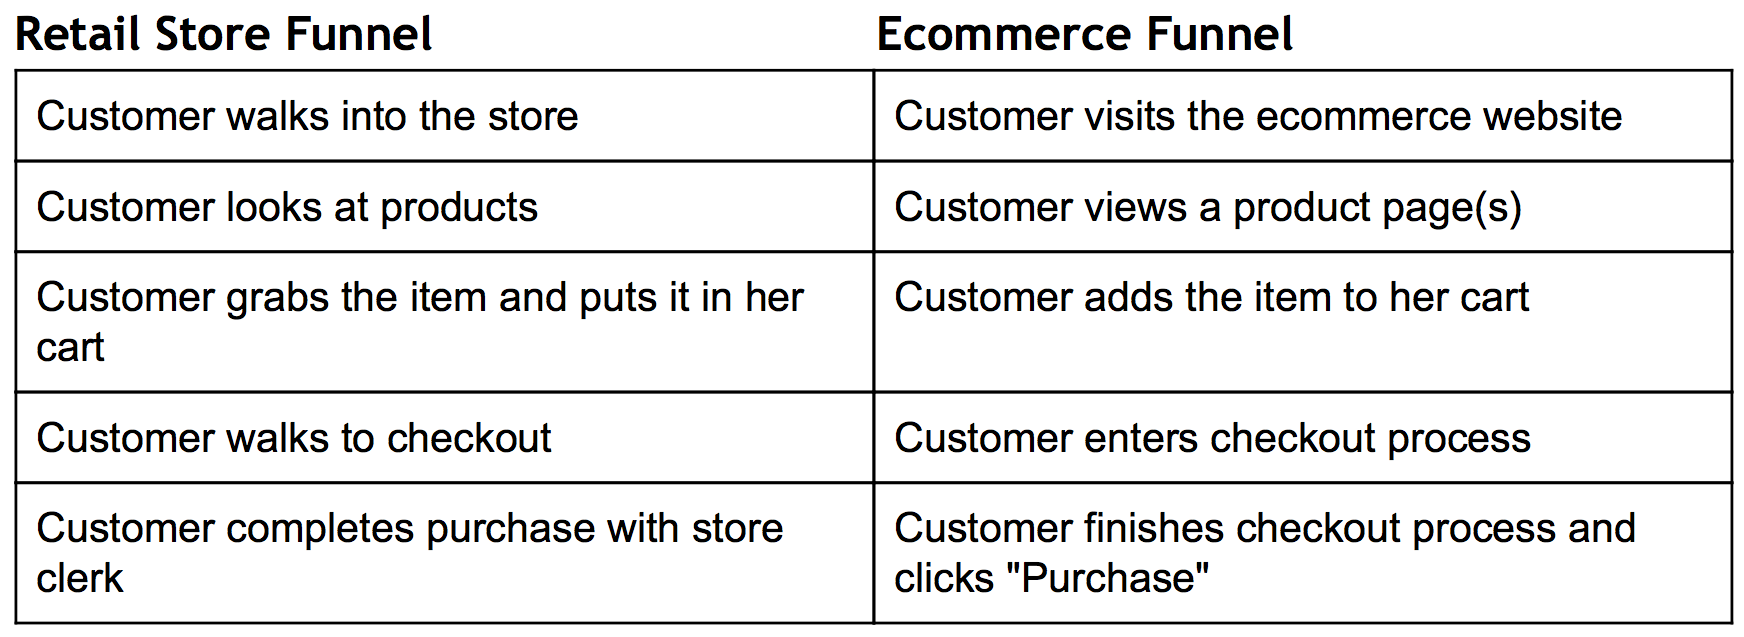 comparación de embudo de marketing-comercio electrónico-tienda